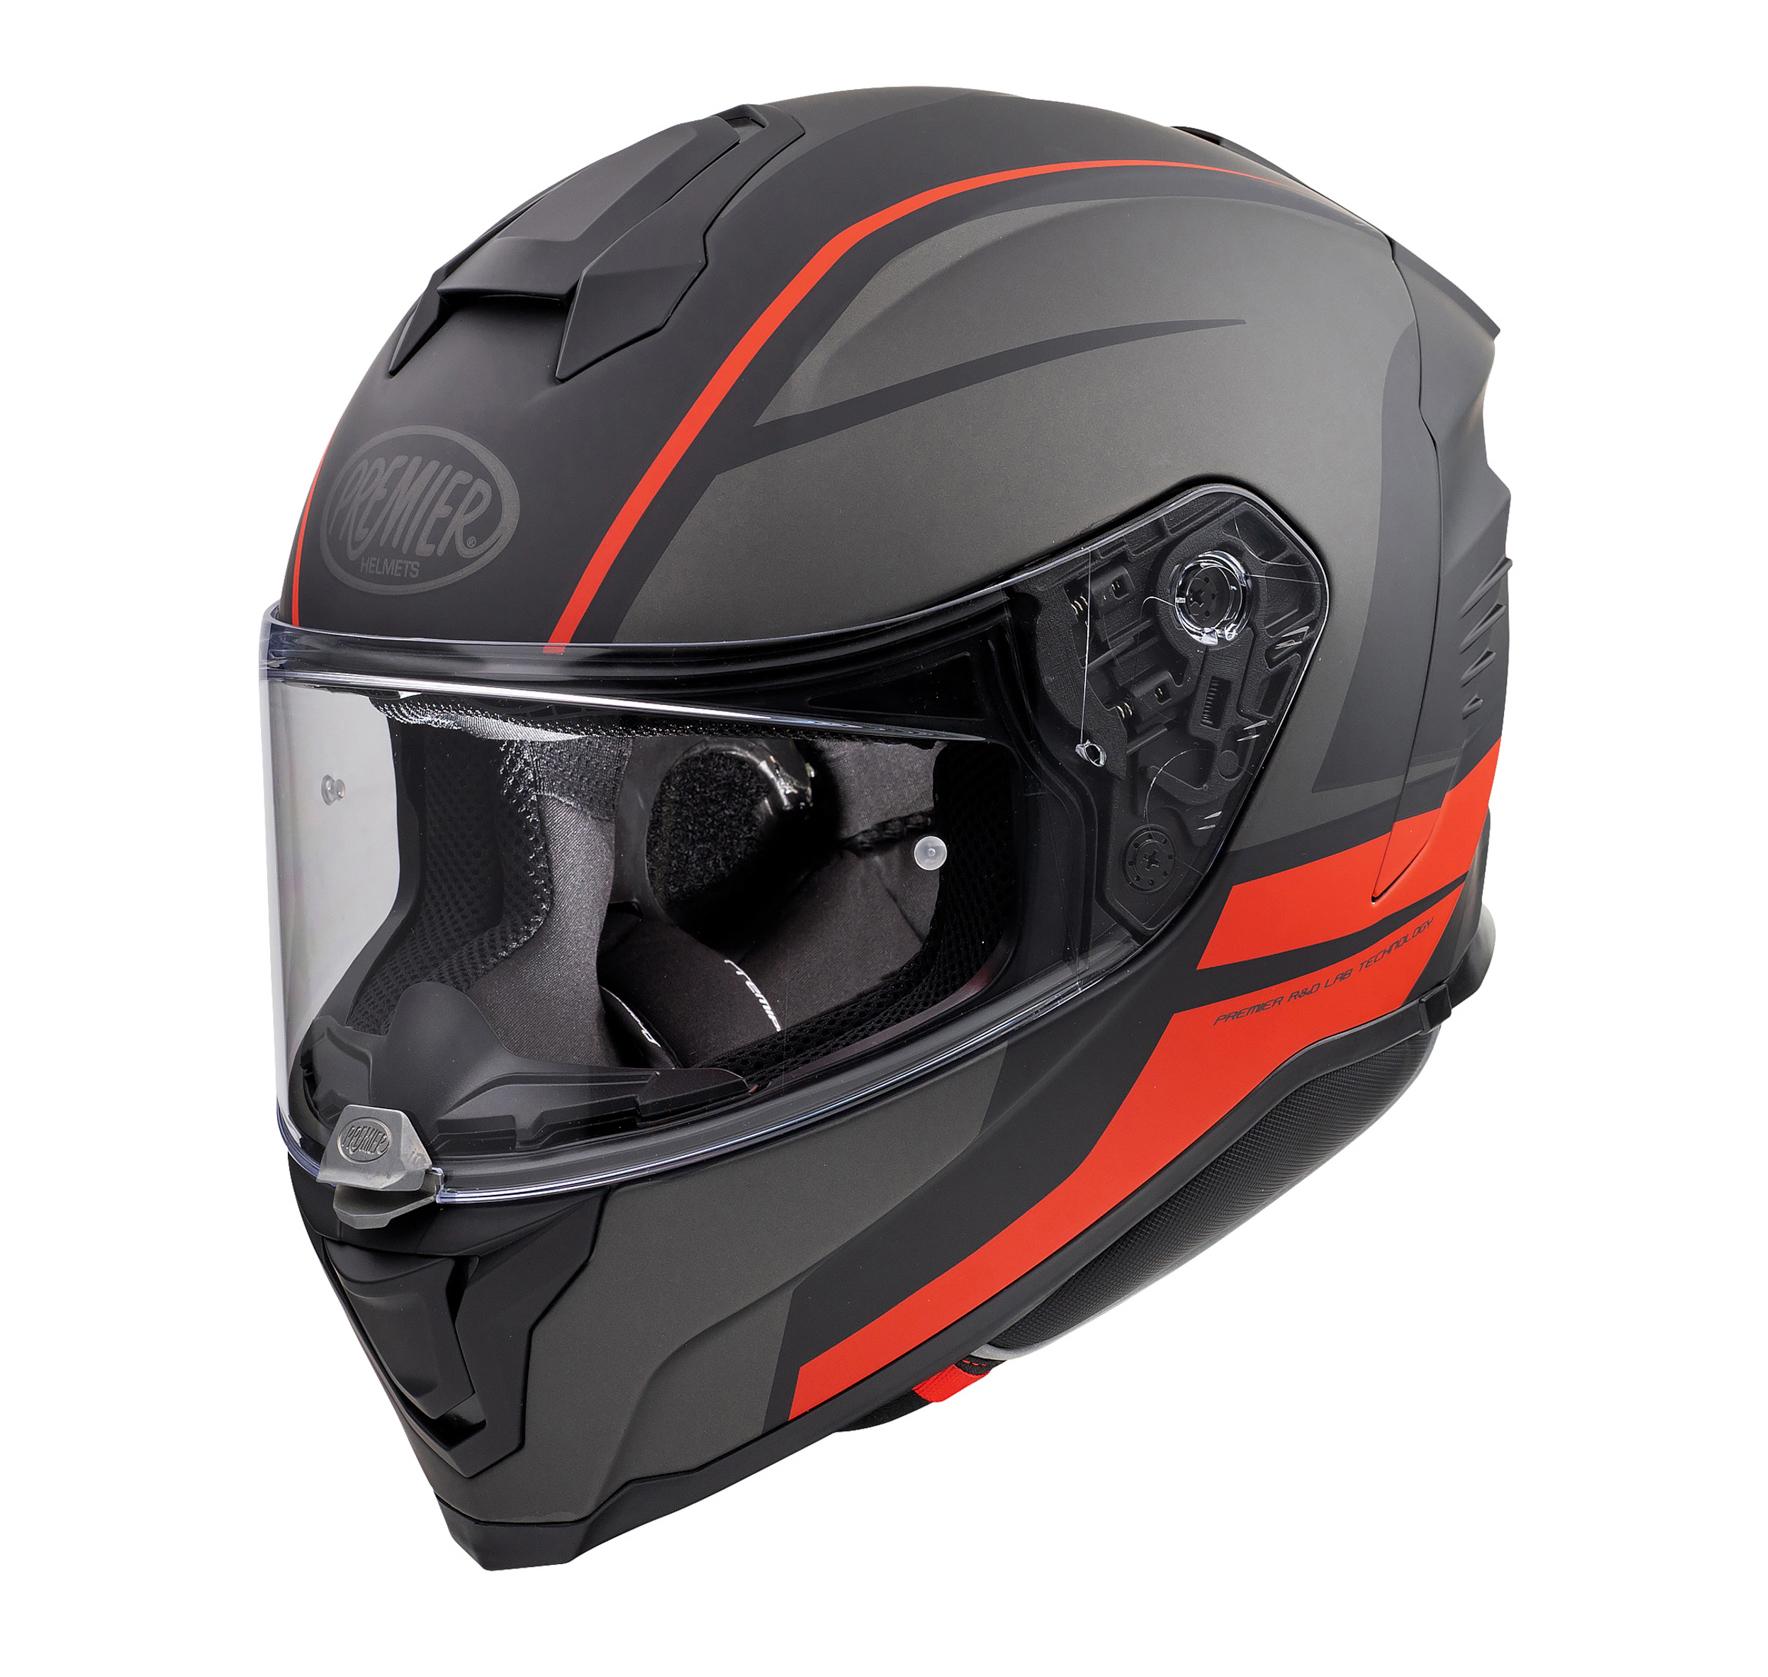 Premier Hyper De Full Face Motorcycle Helmet - Black/Red, M